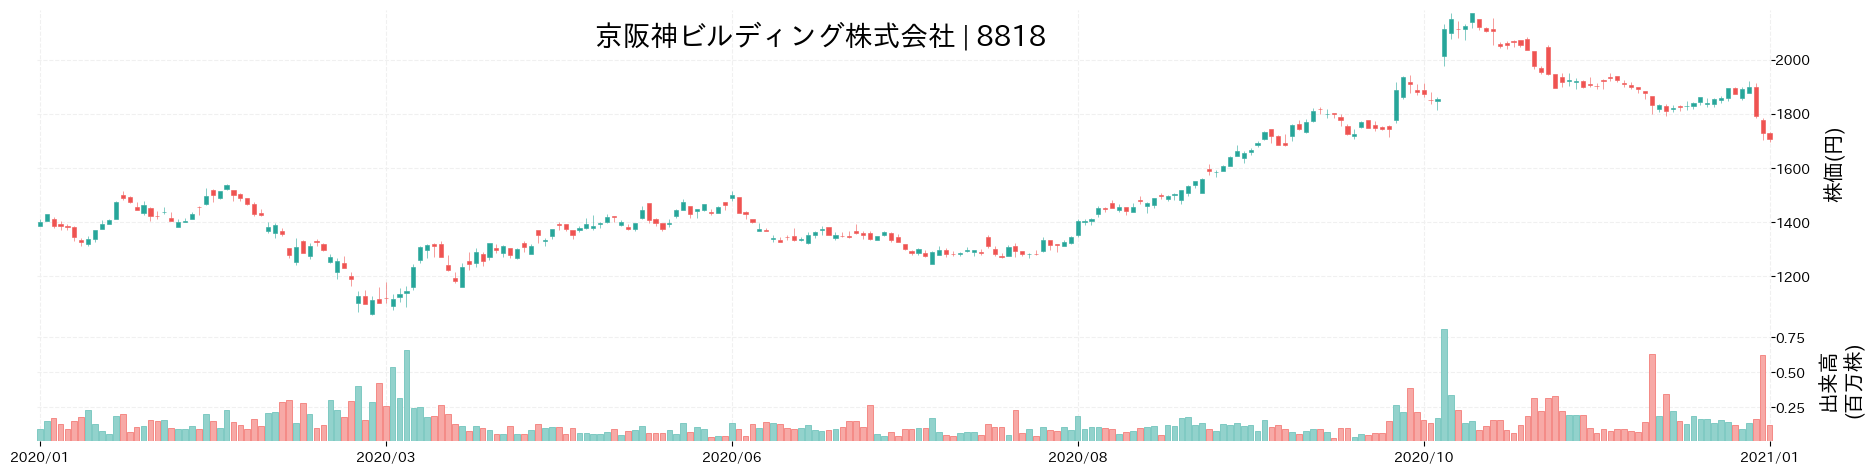 京阪神ビルディングの株価推移(2020)